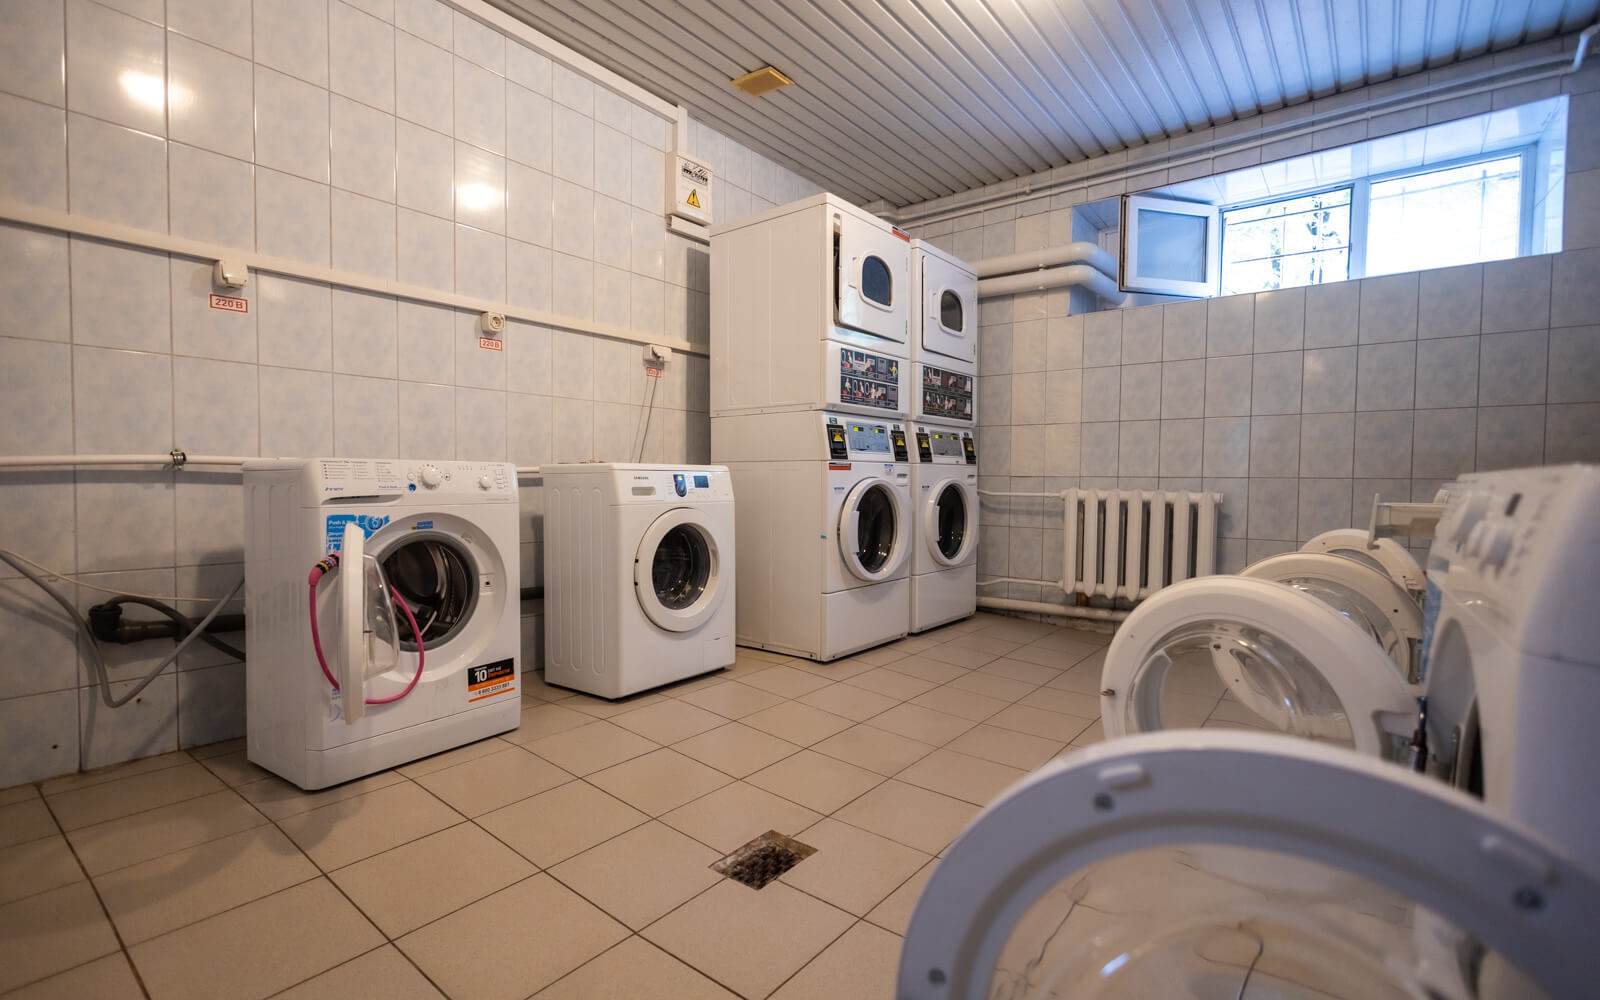 Прачечные в общежитиях оборудованы современными стиральными и сушильными машинами, чтобы студенты могли легко ухаживать за своей одеждой.